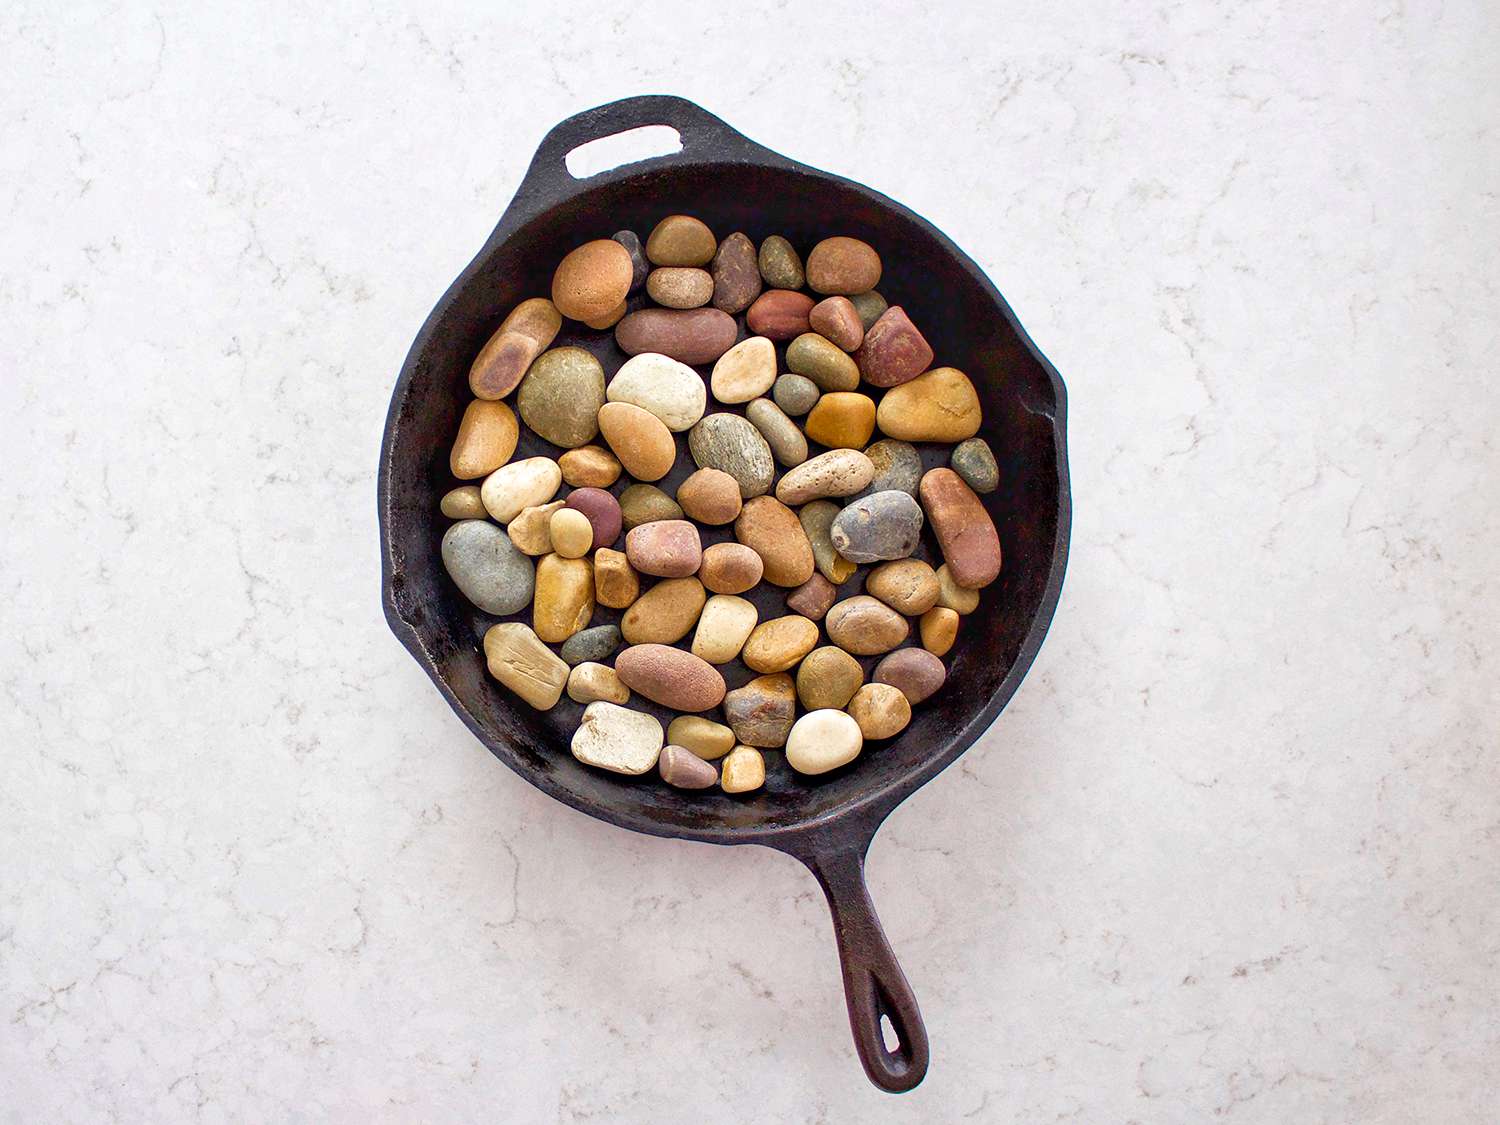 铸铁锅上铺着河中的岩石。